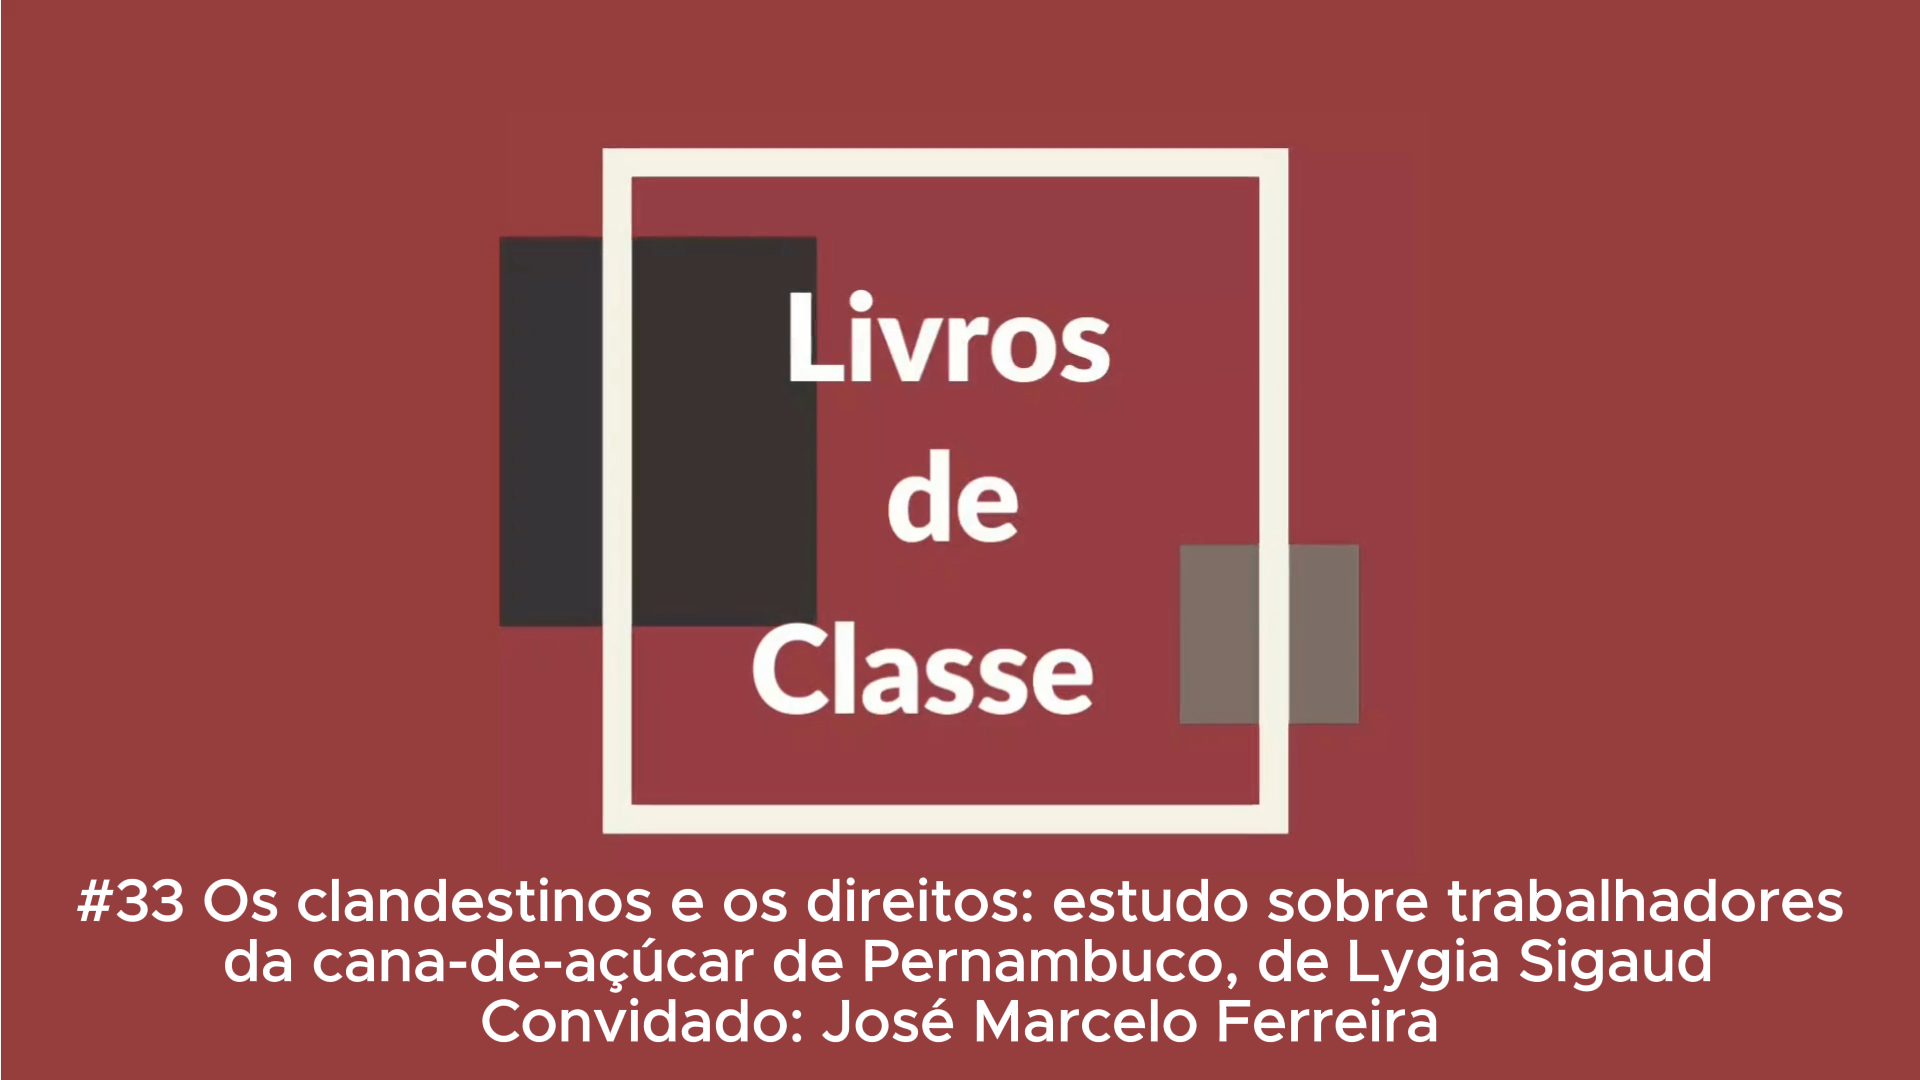 Livros de Classe #33: Os clandestinos e os direitos, de Lygia Sigaud, por José Marcelo Ferreira